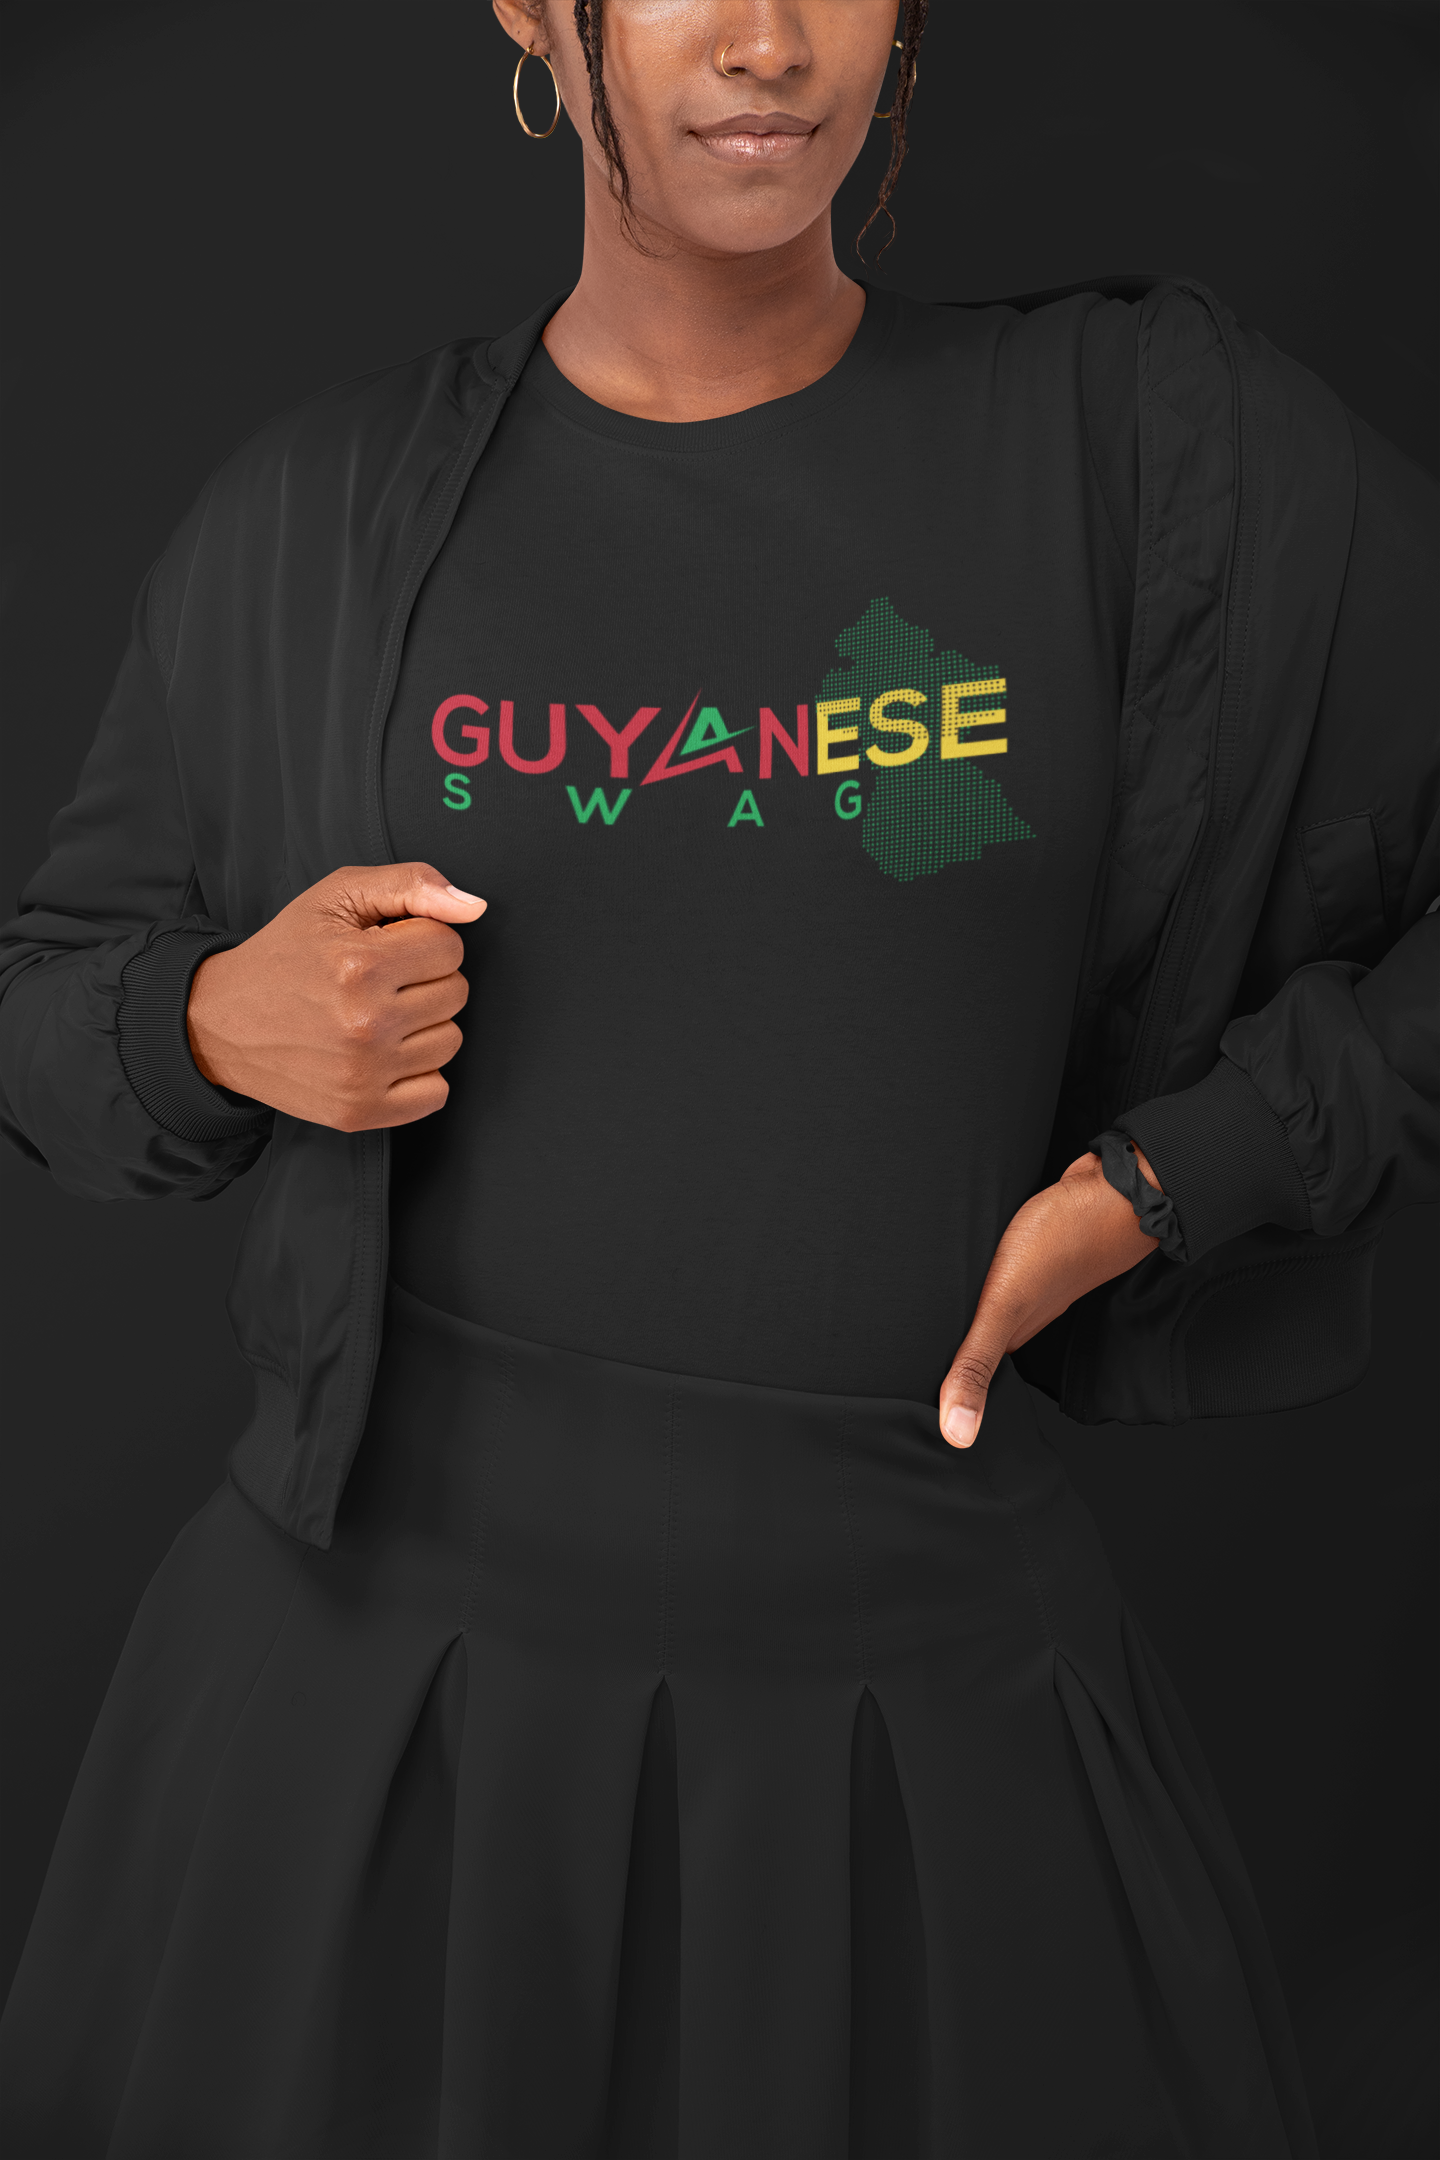 Guyanese Swag Guyana Map Women's Tee